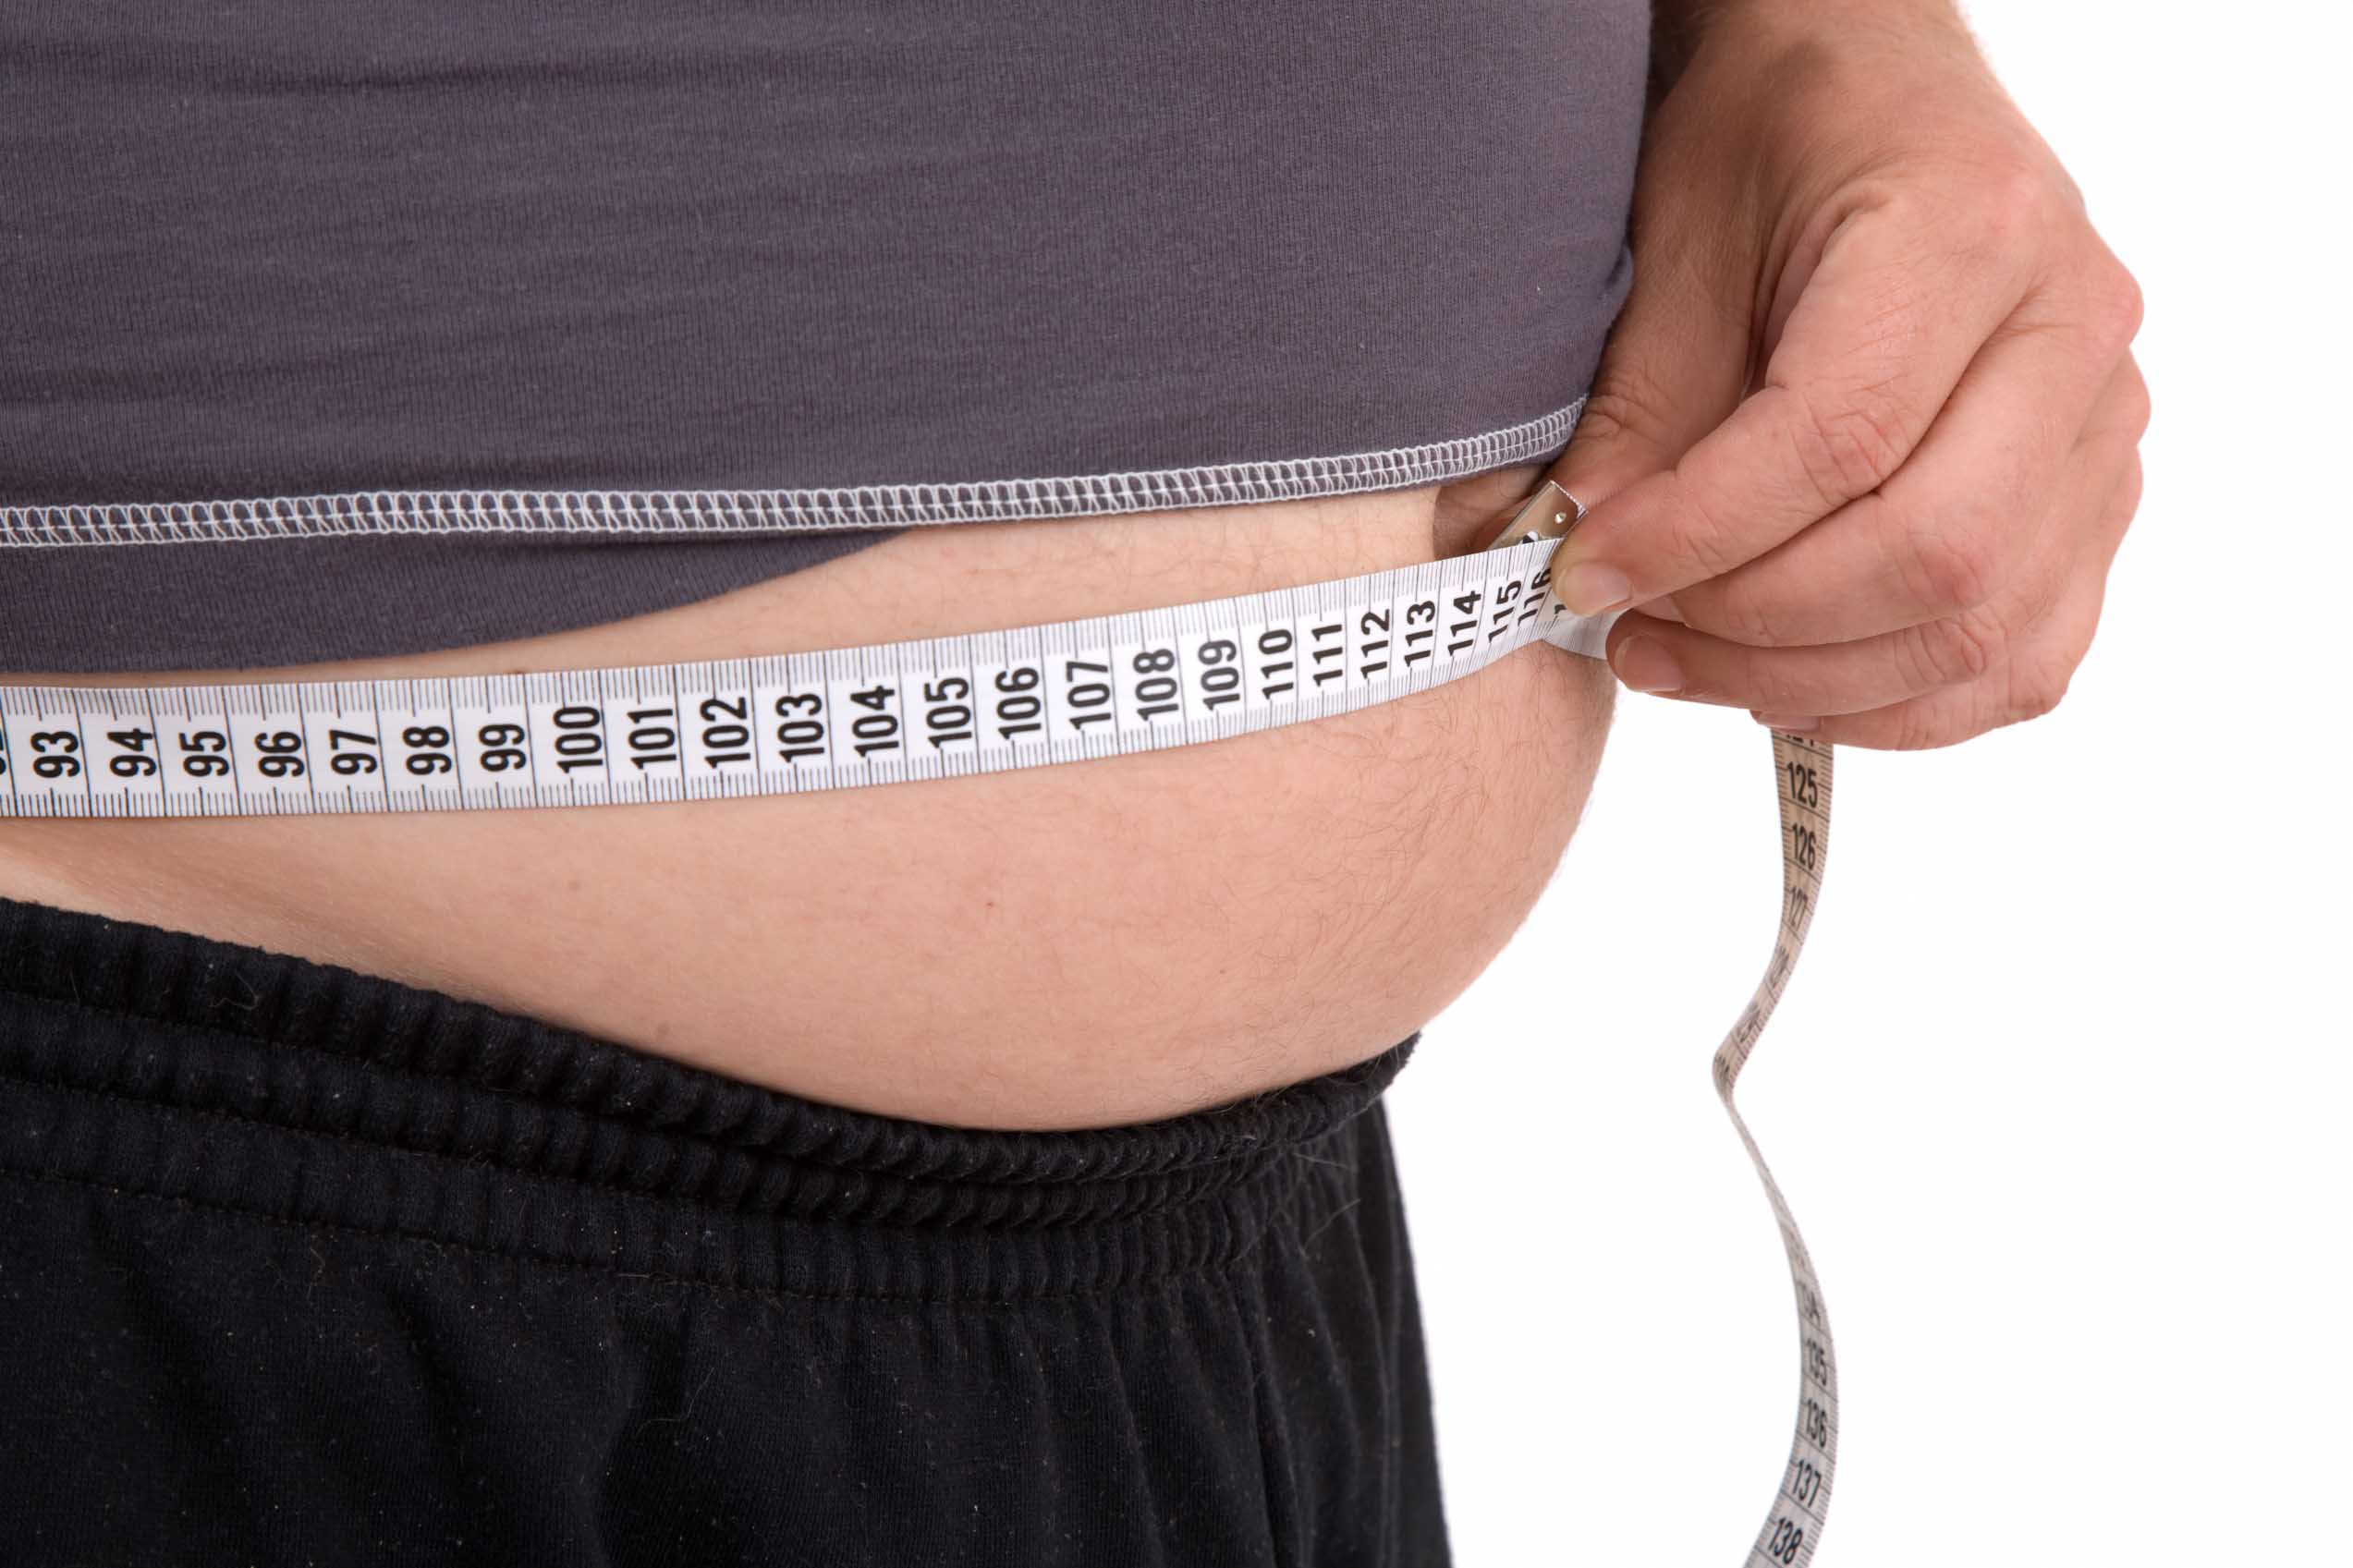 Συσχετίζεται ο δείκτης νοημοσύνης με την παχυσαρκία;